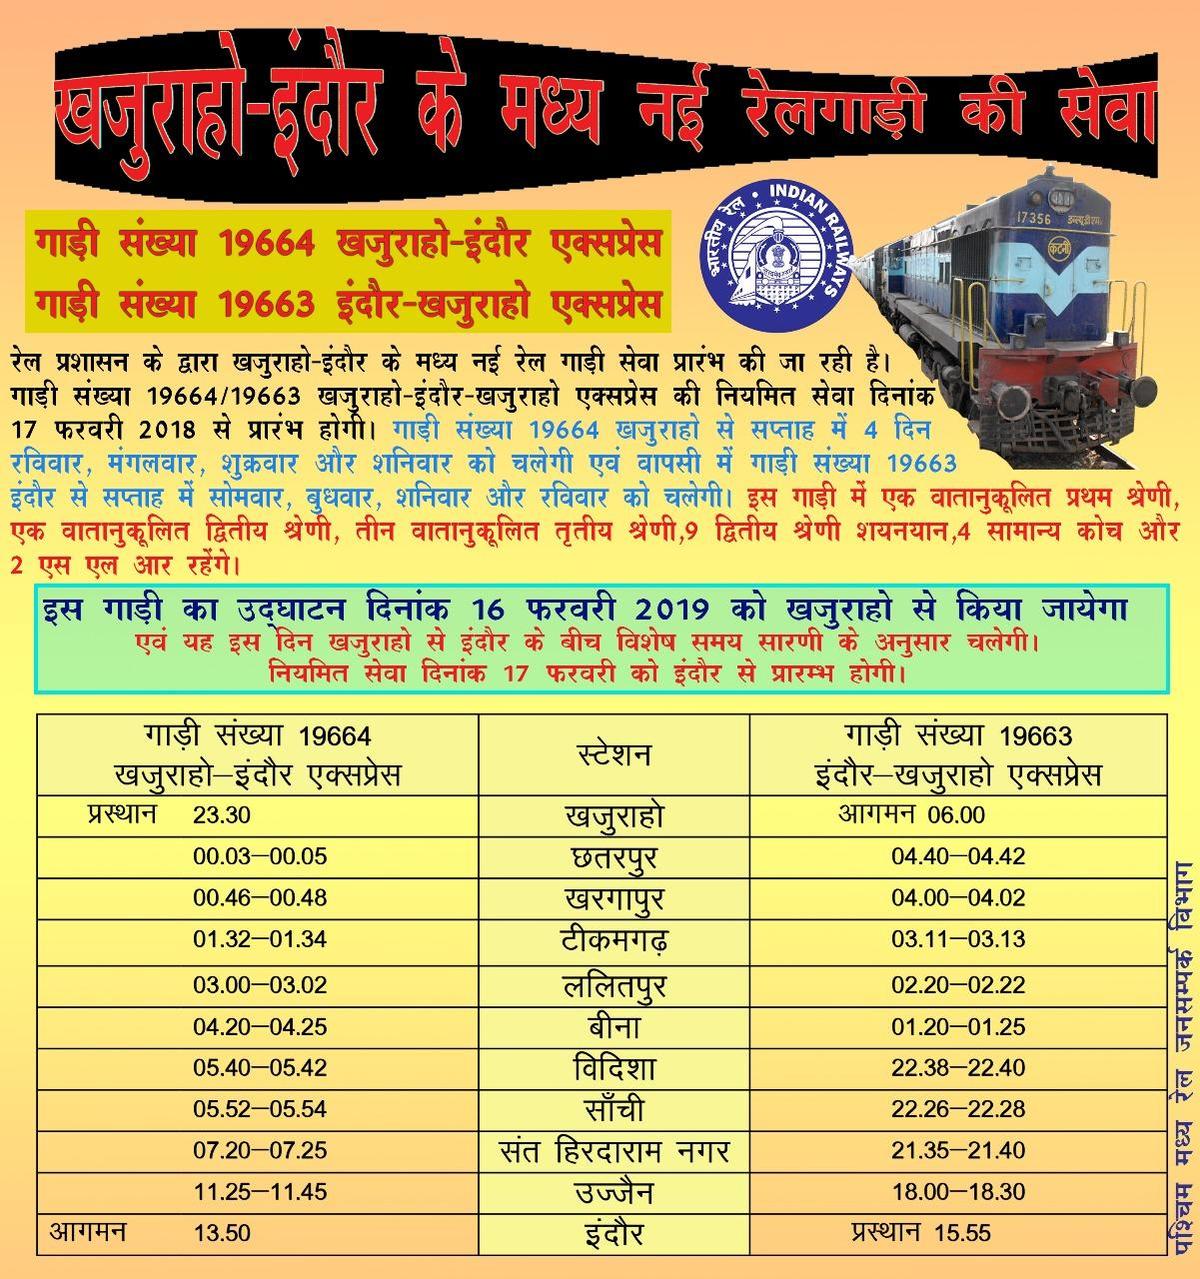 खजुराहो-इंदौर एक्सप्रेस ट्रेन को केंद्रीय राज्यमंत्री आज दिखाएंगे हरी झंडी